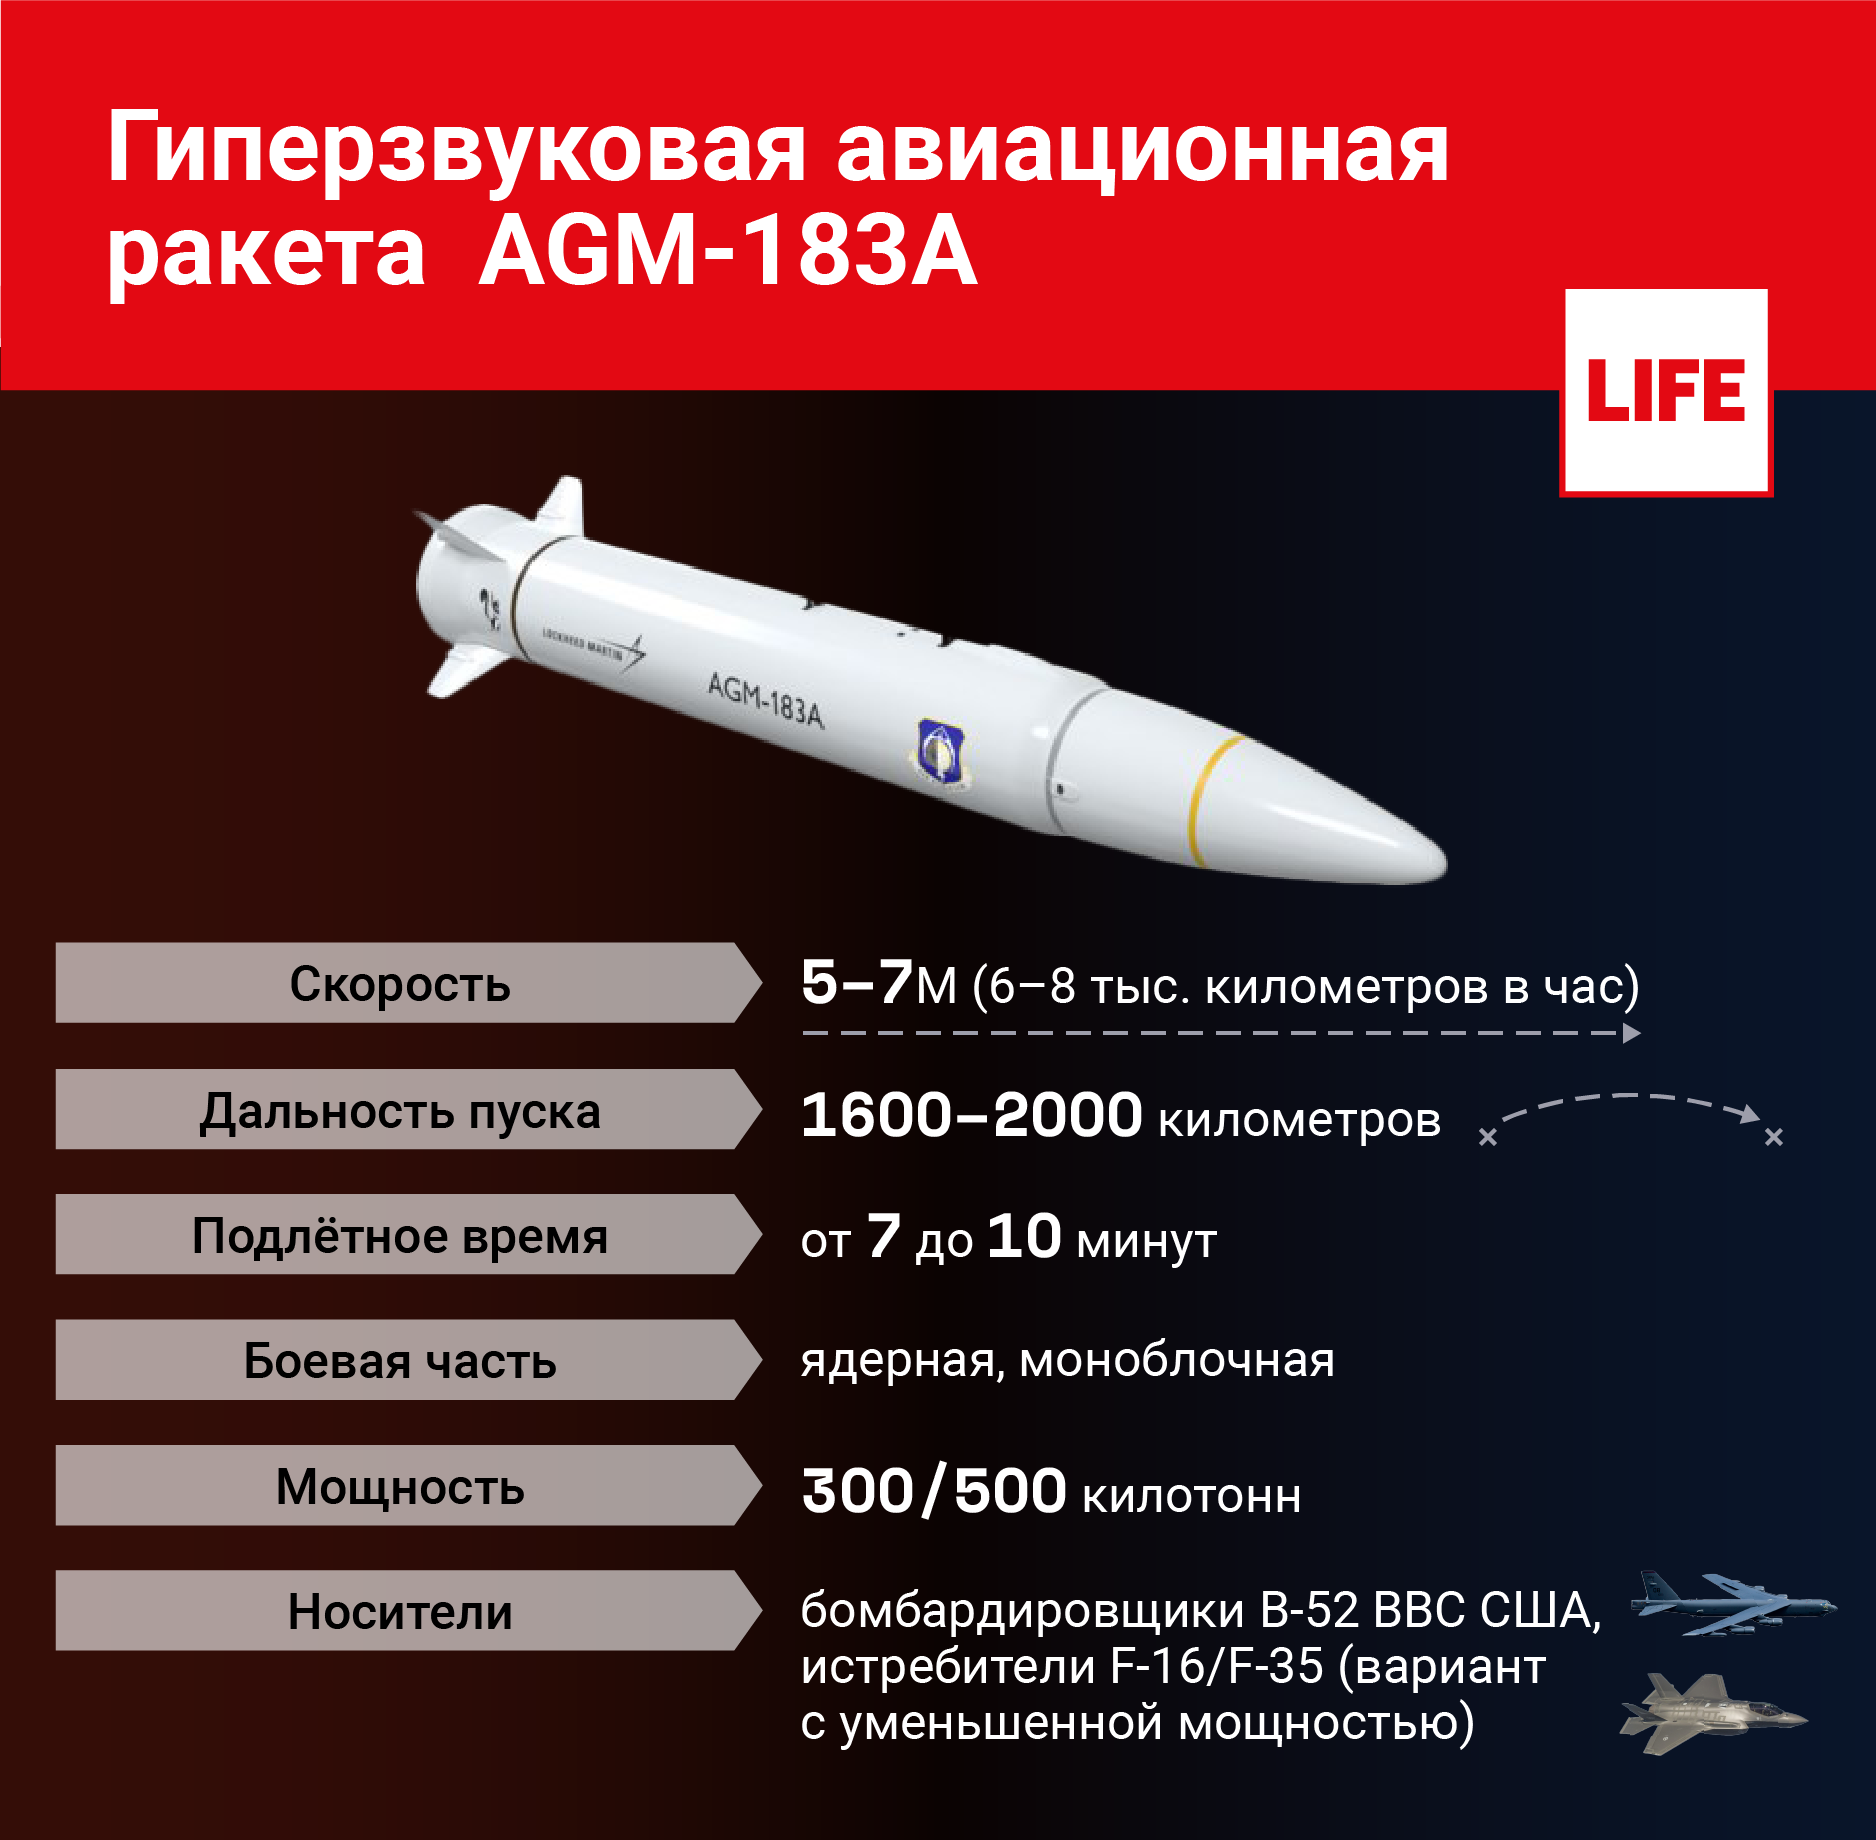 Гиперзвуковая авиационная ракета AGM-183A. Инфографика © LIFE